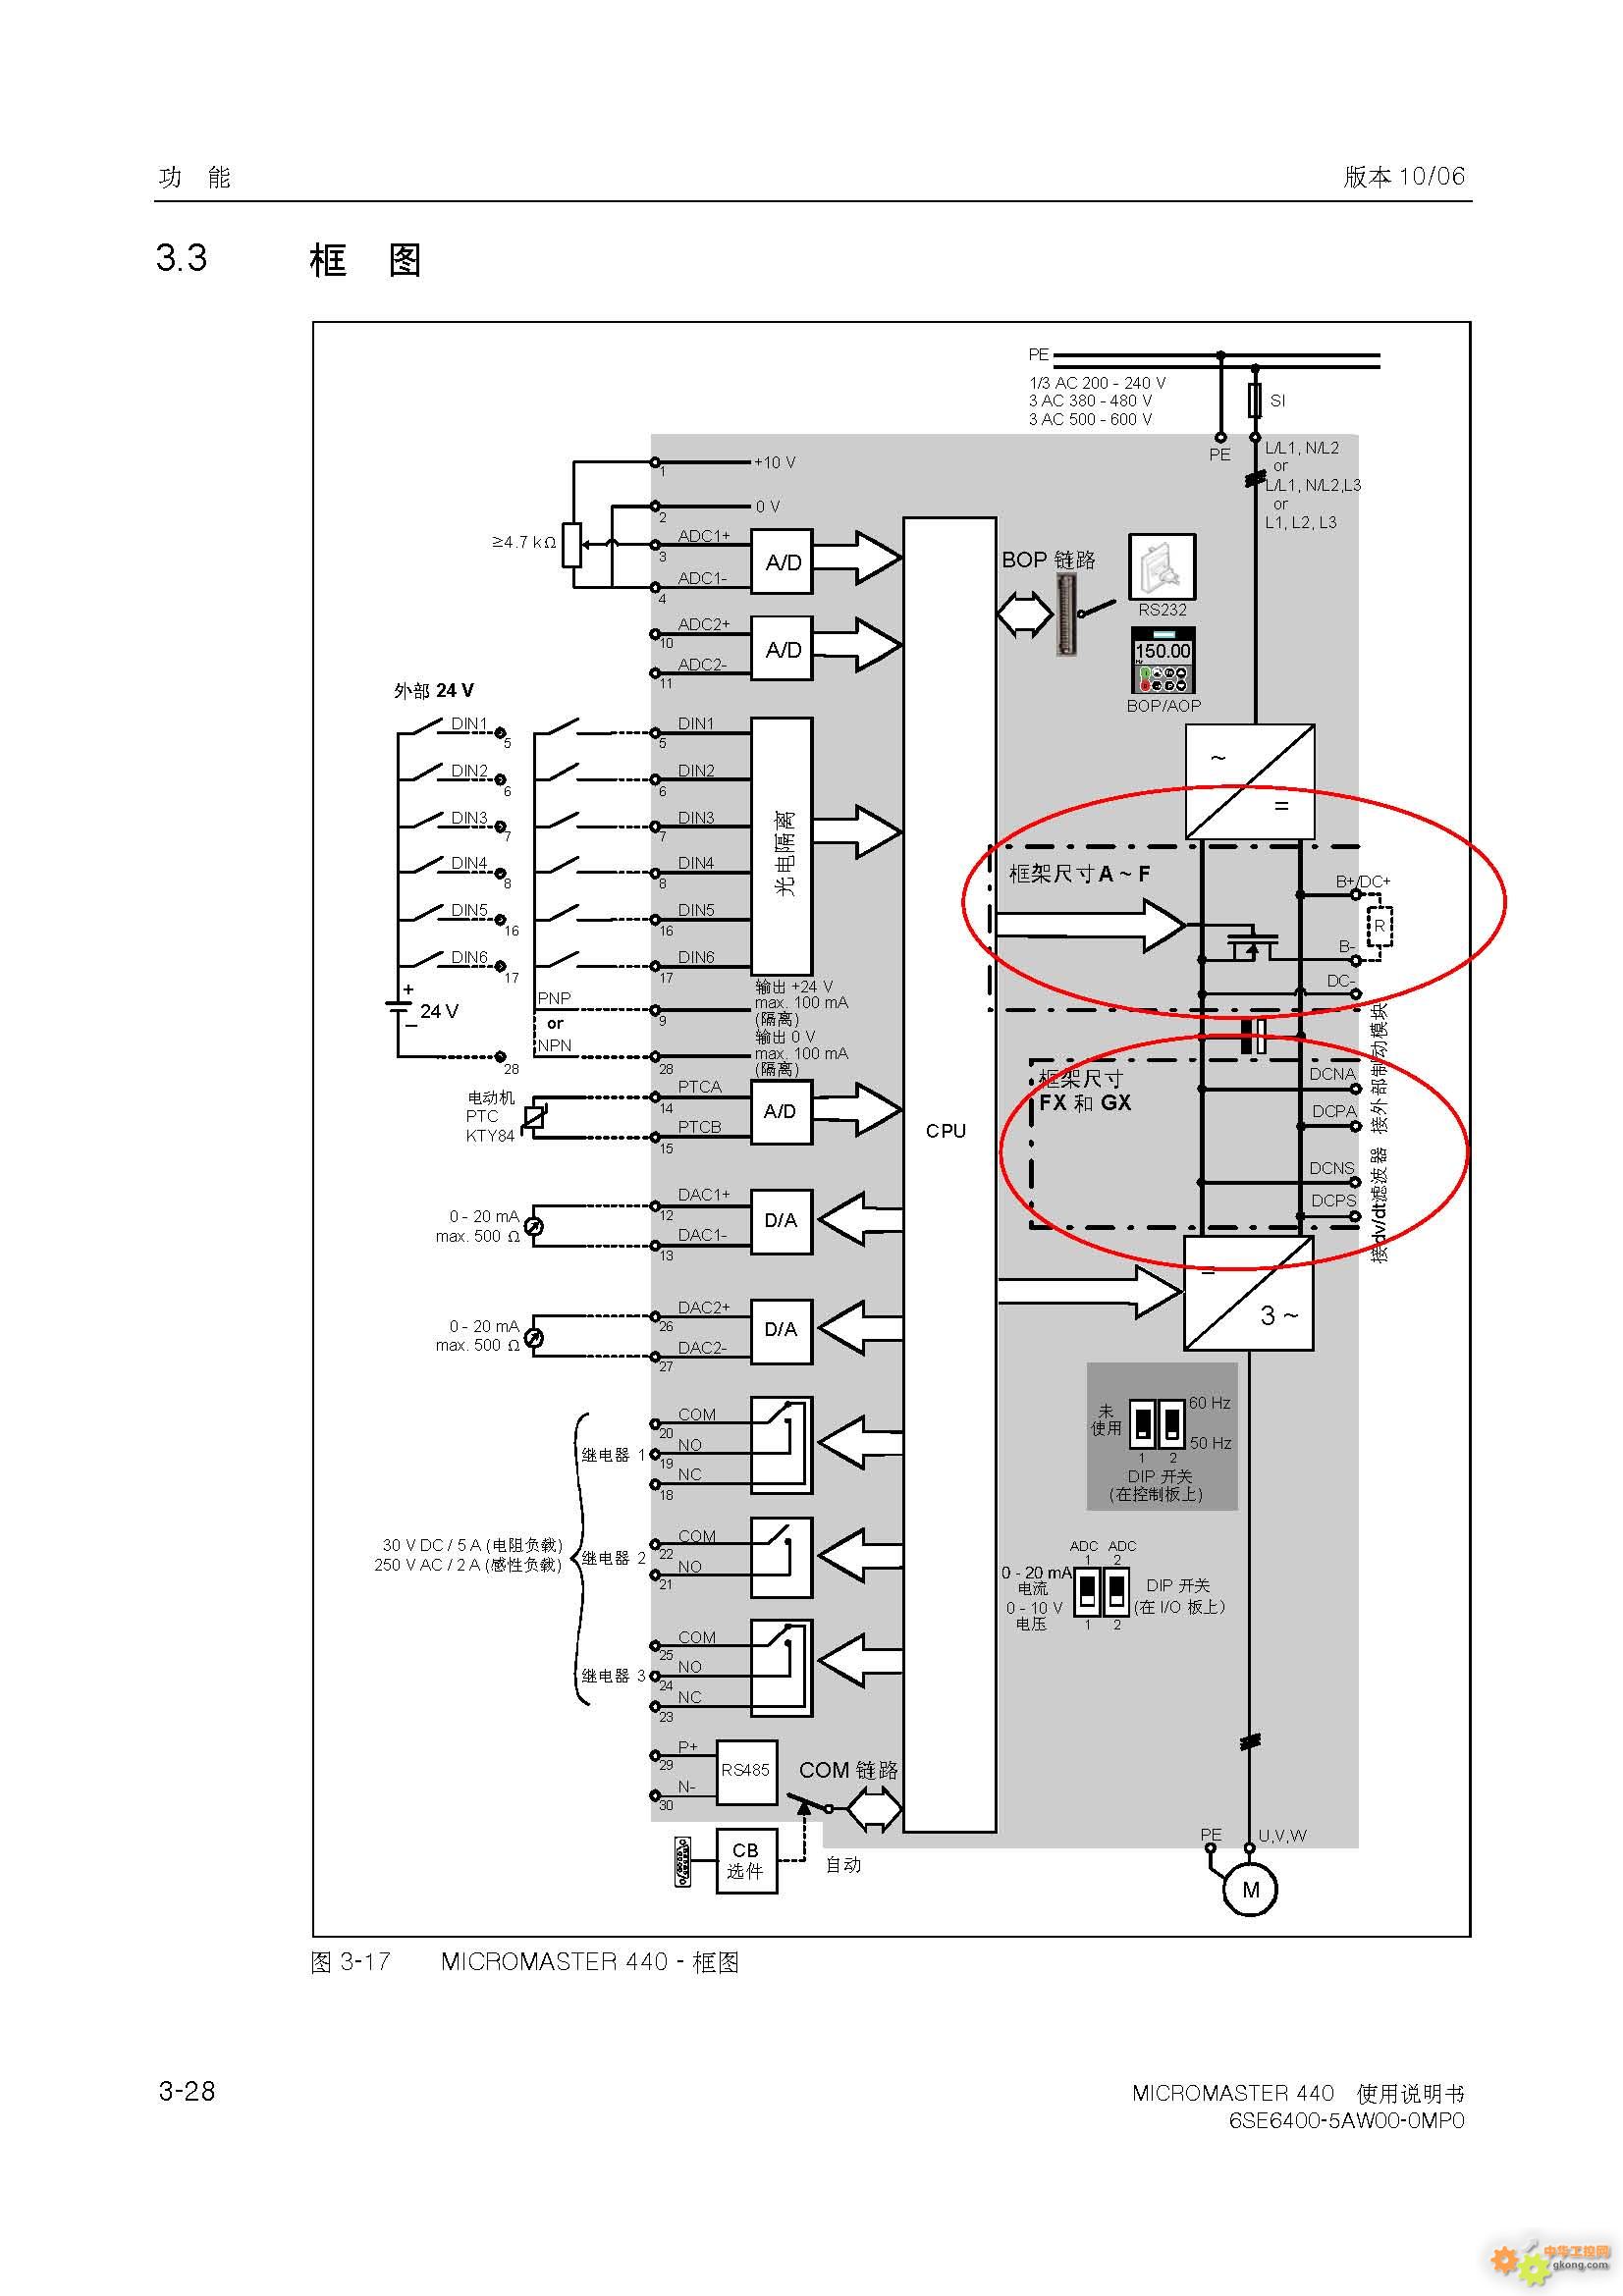 主题:西门子m440变频器(30kw)外接制动单元如何接线?